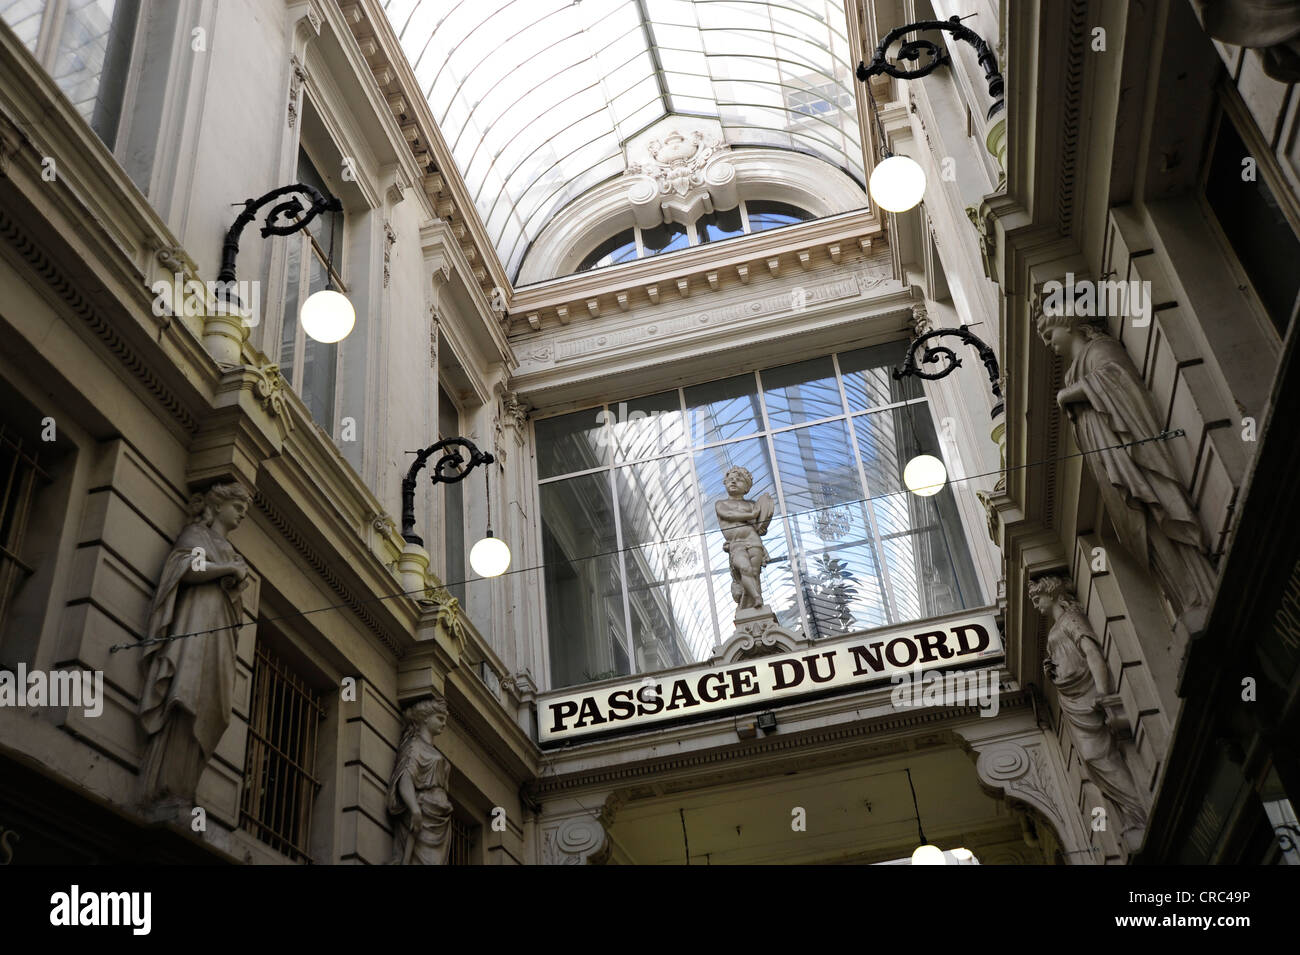 Passage du Nord, un centre commercial près de la Place de Brouckere, centre-ville, Bruxelles, Belgique, Benelux Banque D'Images